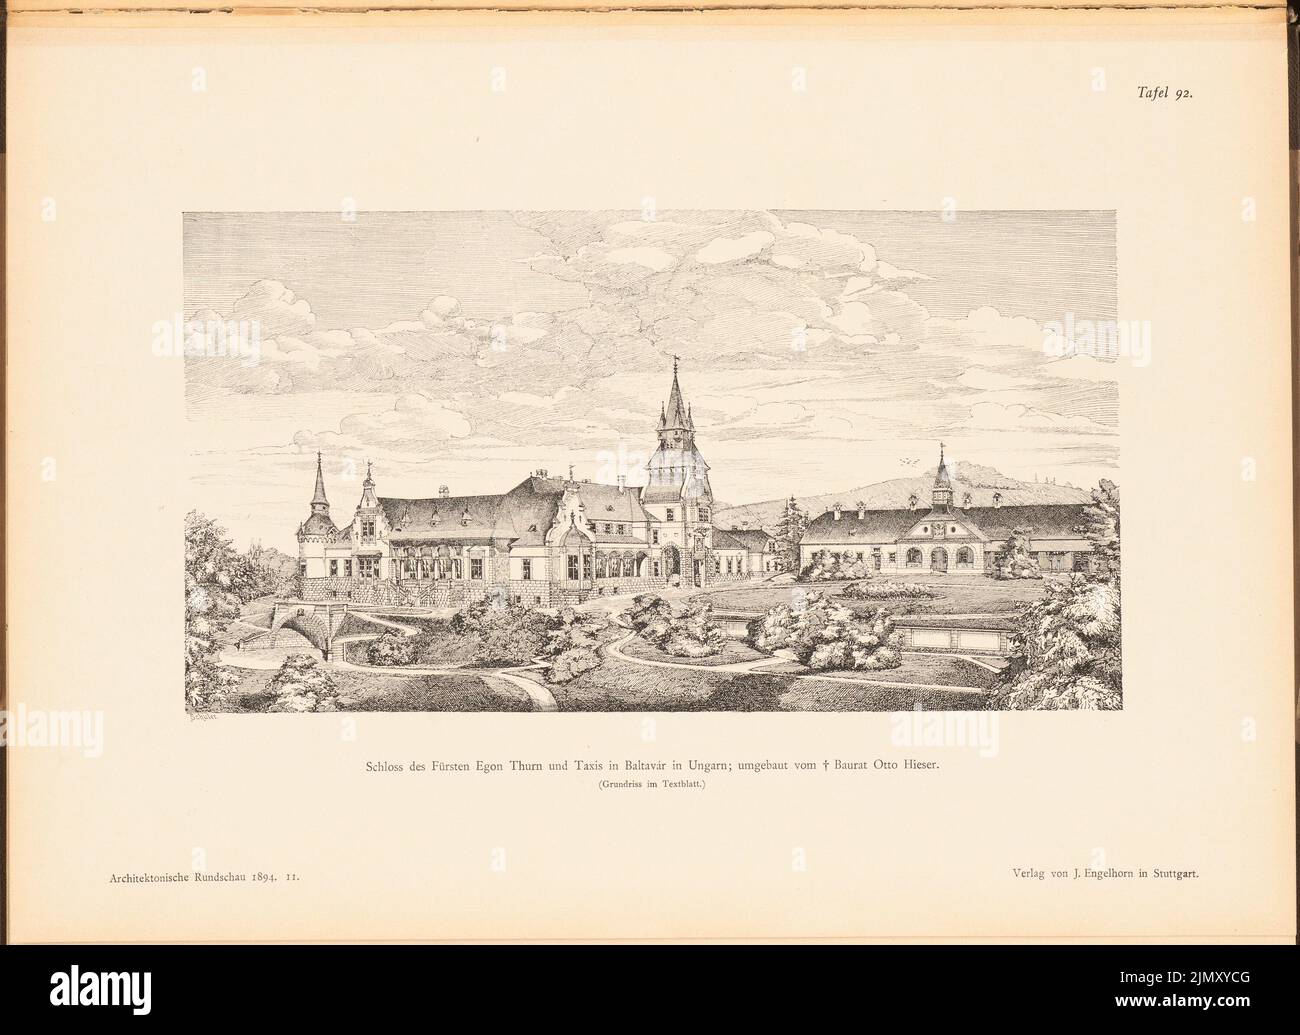 Hieser Otto, Schloss von Prinz Egon Thurn und Taxis, Balavar. (Von: Architekt. Rundschau, Hrsg. v. Eisenlohr & Weigle, Stuttgart 1894) (1894-1894): Perspektivansicht. Drucken auf Papier, 28,2 x 38,7 cm (einschließlich Scankanten) Stockfoto